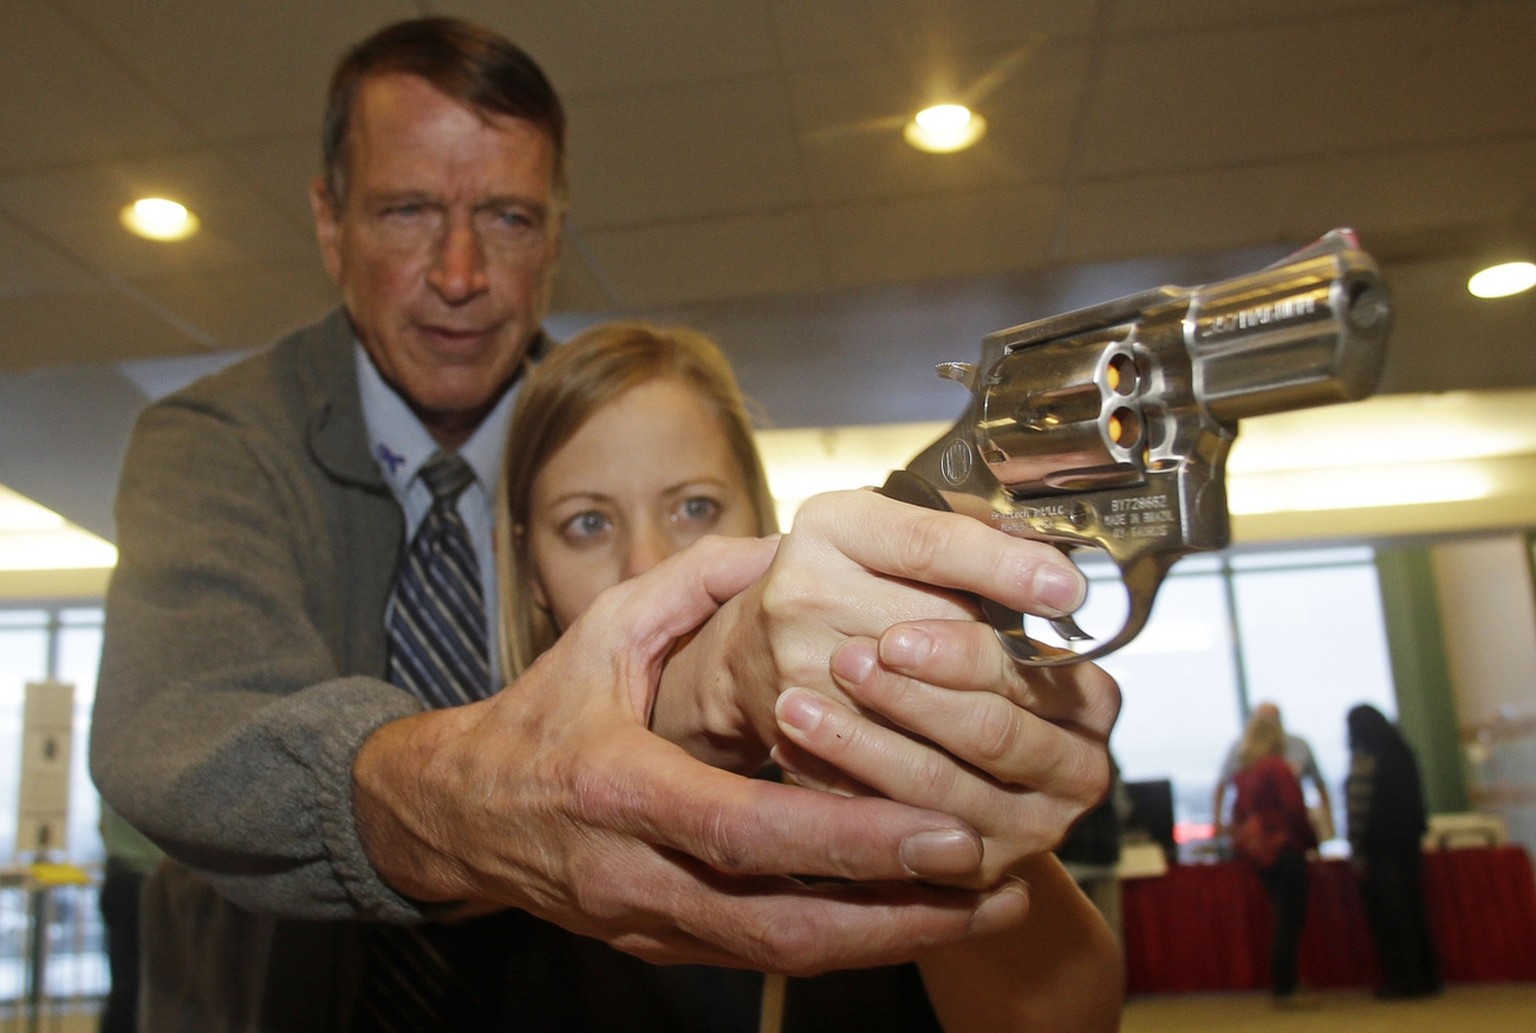 Eine Grundschul-Lehrerin in Utah wird an der Waffe ausgebildet – ein Trend, der sorgenvoll beobachtet wird